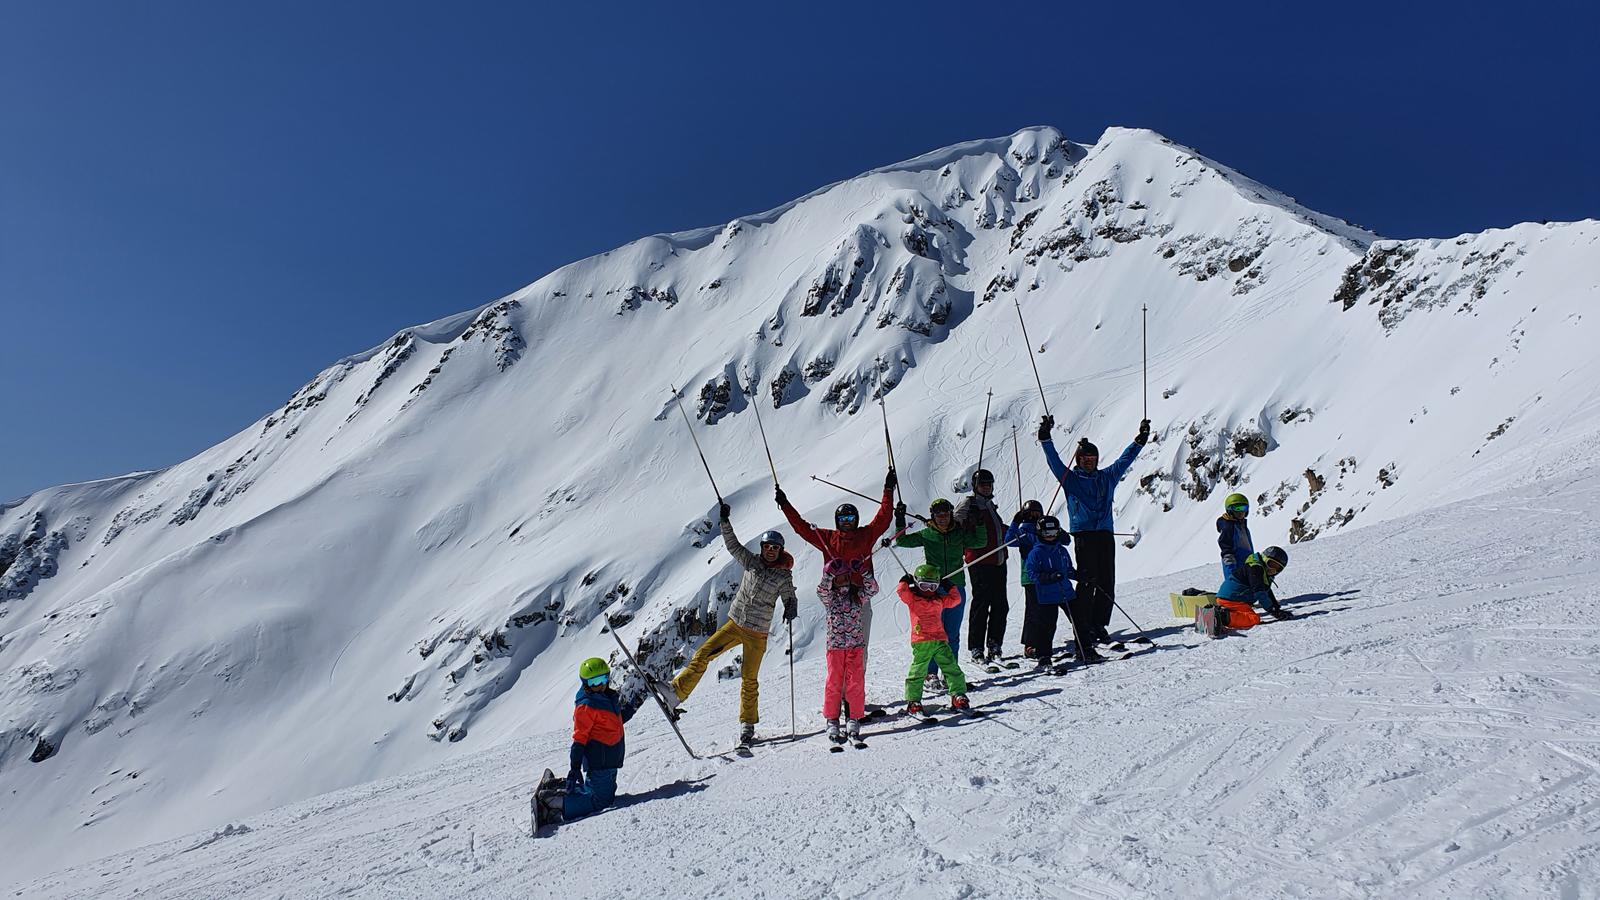 Bulharsko - lyžování v Borovci a Bansku